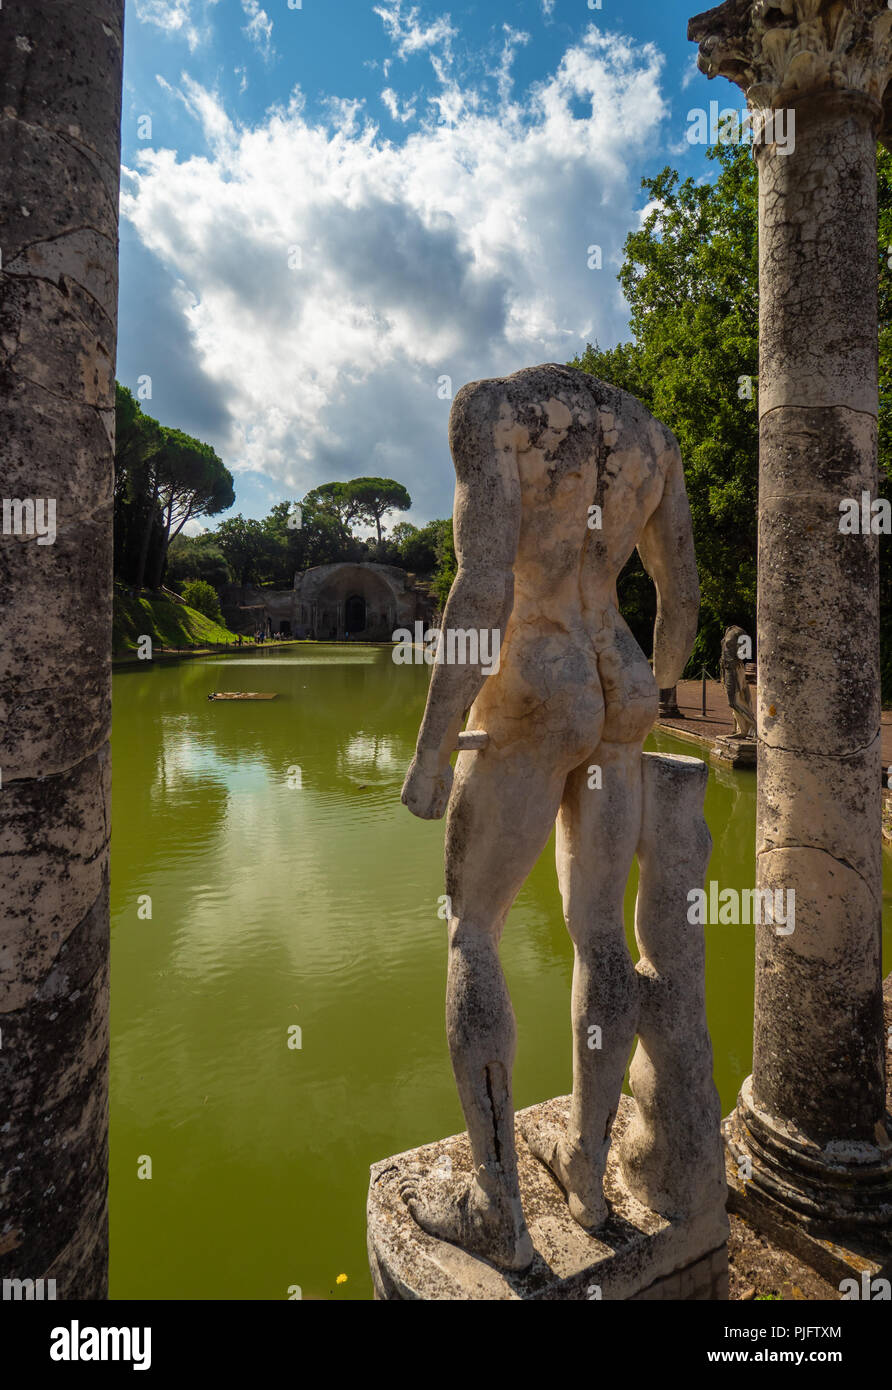 Tivoli, Italia - il famoso parco archeologico di Tivoli, in provincia di Roma, con le rovine di una città dell'impero romano chiamato Villa Adriana Foto Stock